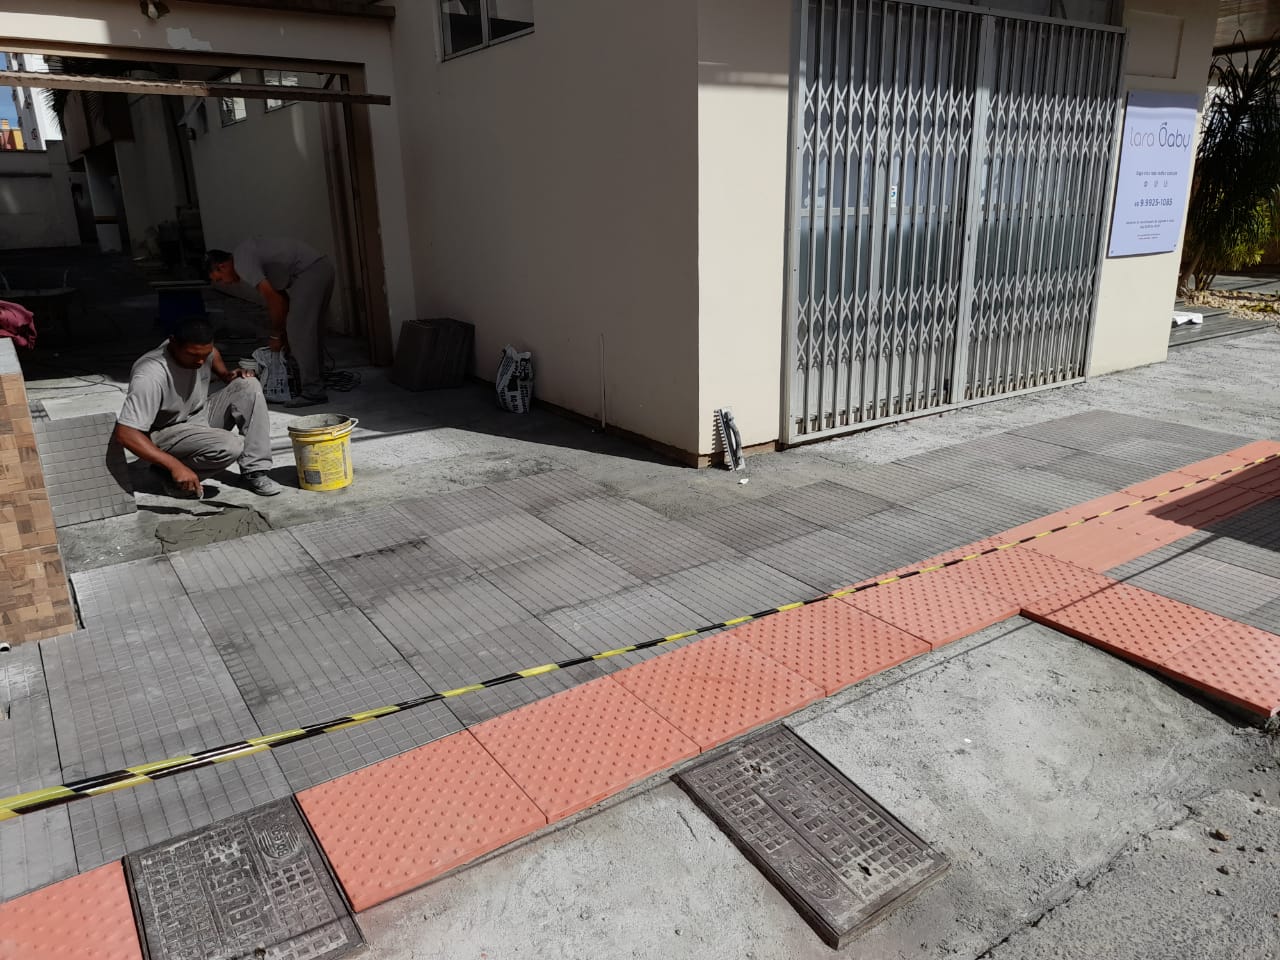 Adequação das calçadas: Prefeitura de Criciúma está notificando mais de 150 proprietários de imóveis por semana